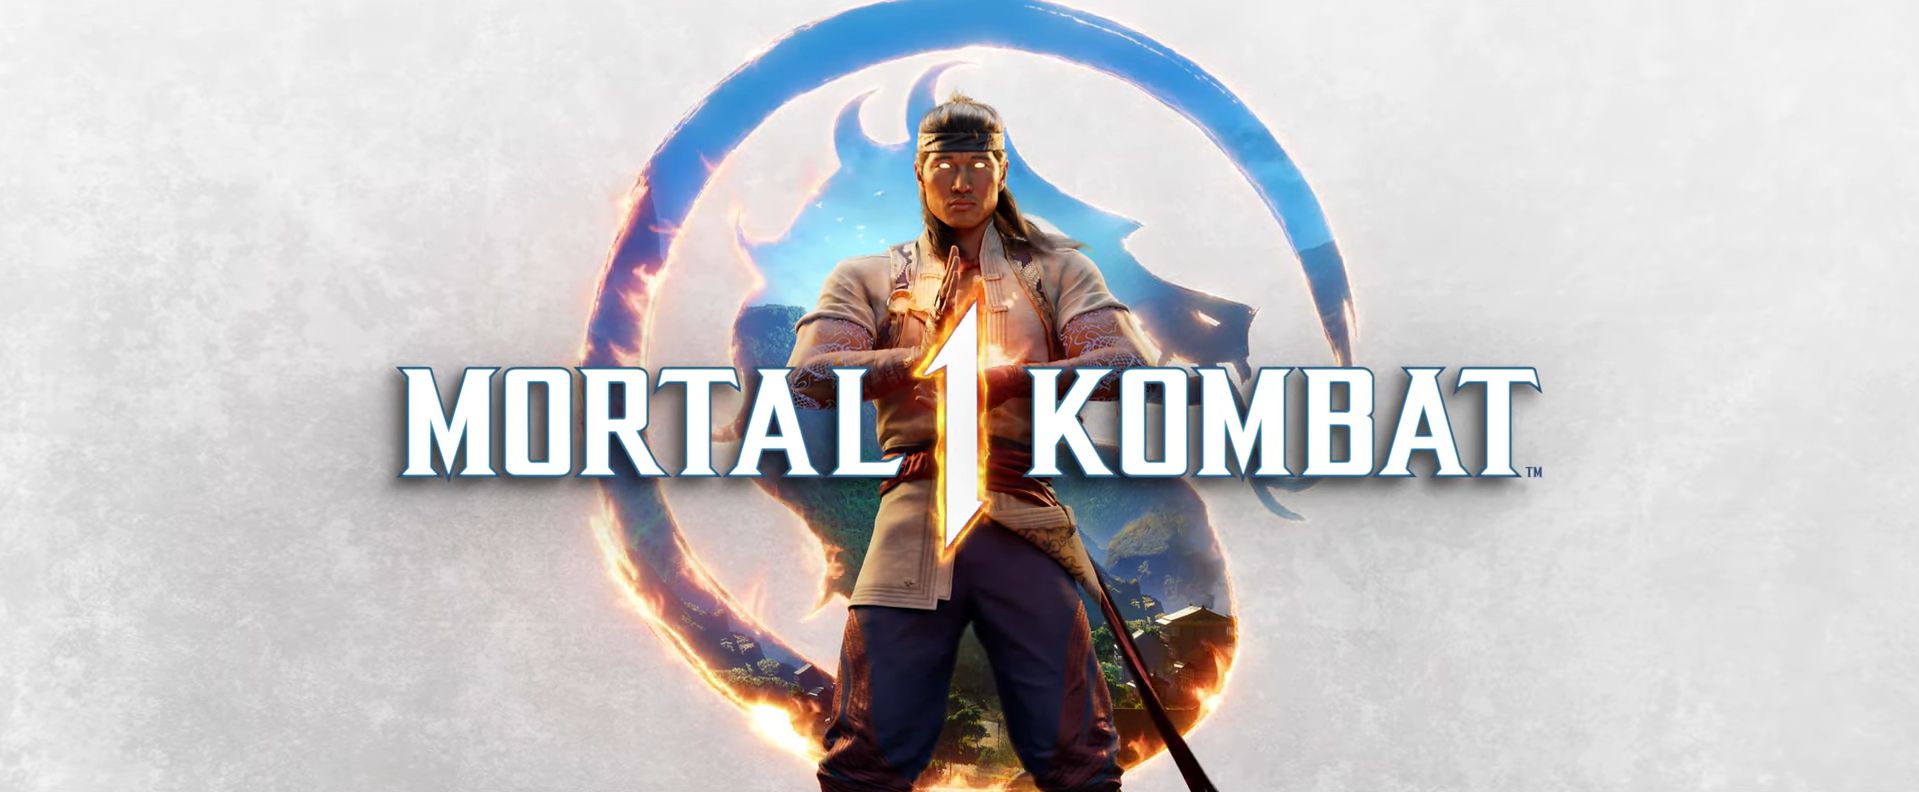 Mortal Kombat 1 - S'offre une nouvelle vidéo qui nous invite au "Kombat" - GEEKNPLAY Home, News, Nintendo Switch, PC, PlayStation 5, Xbox Series X|S